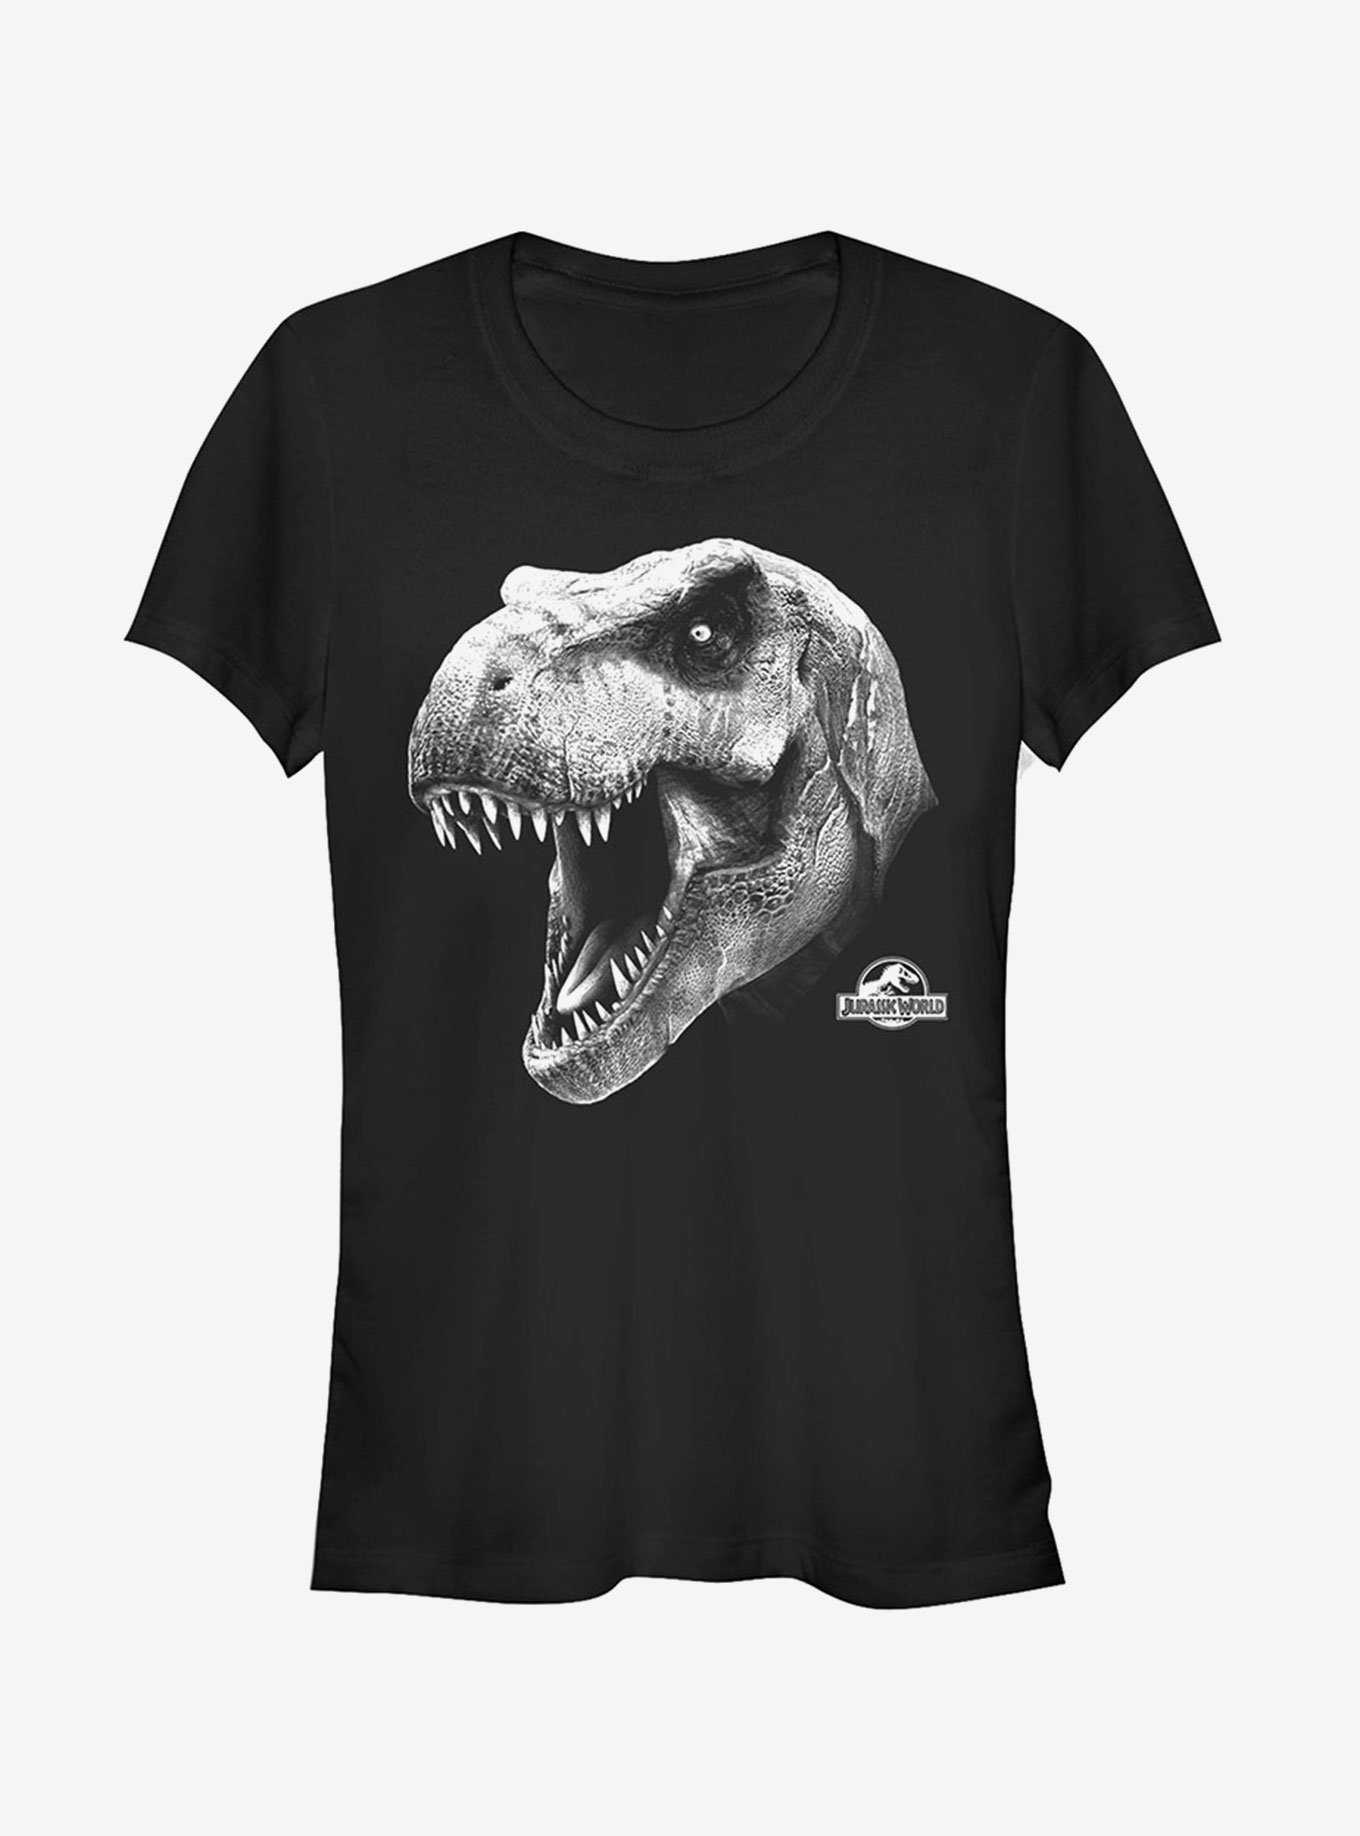 T. Rex Roar Girls T-Shirt, , hi-res